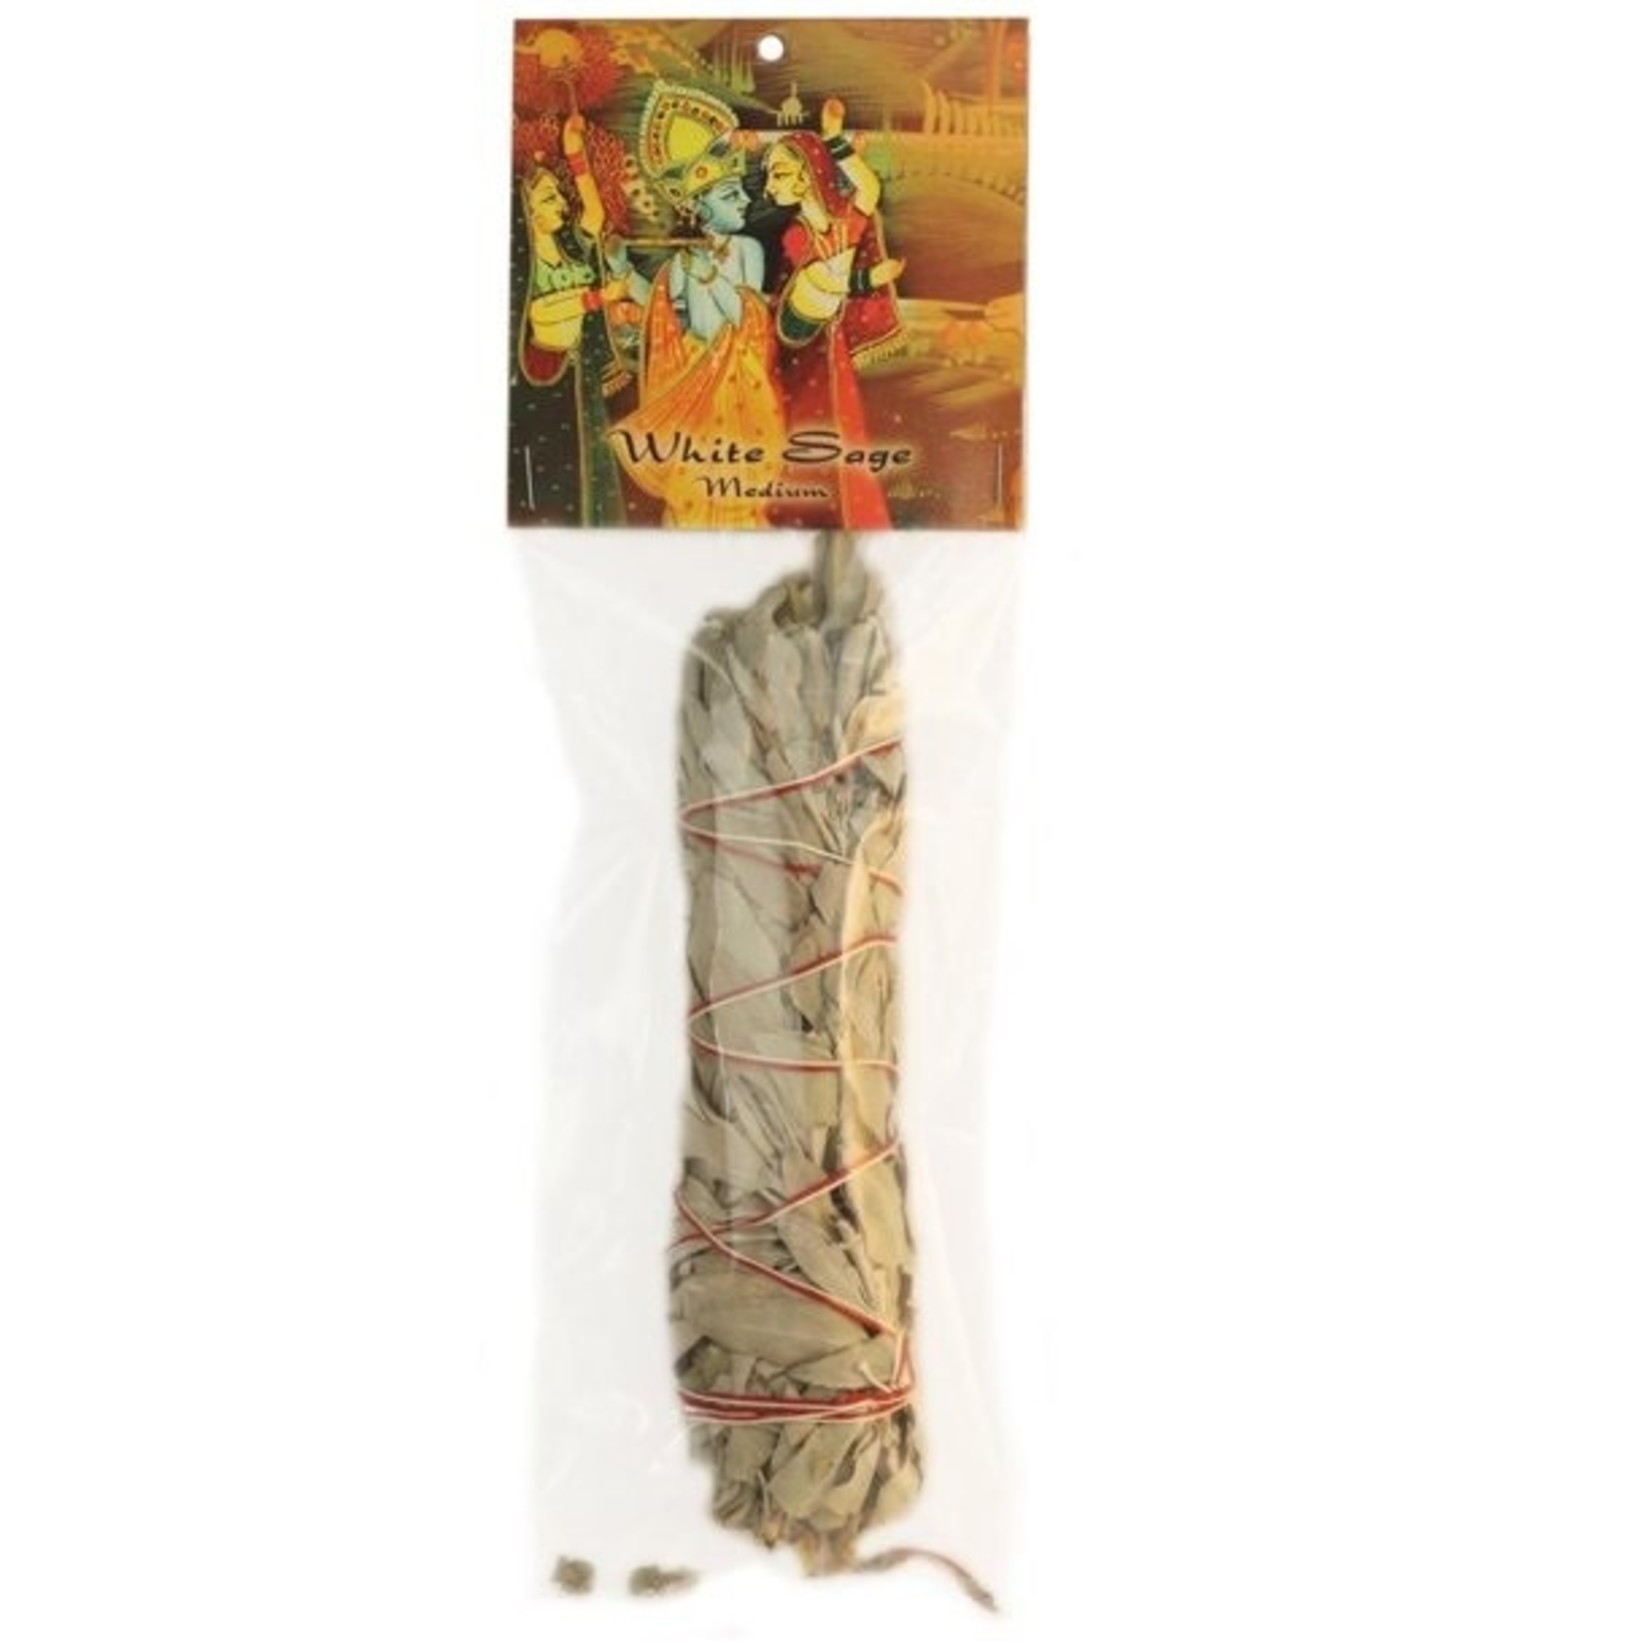 Prabhujis Gifts White Sage Smudge Stick - Medium Bundle